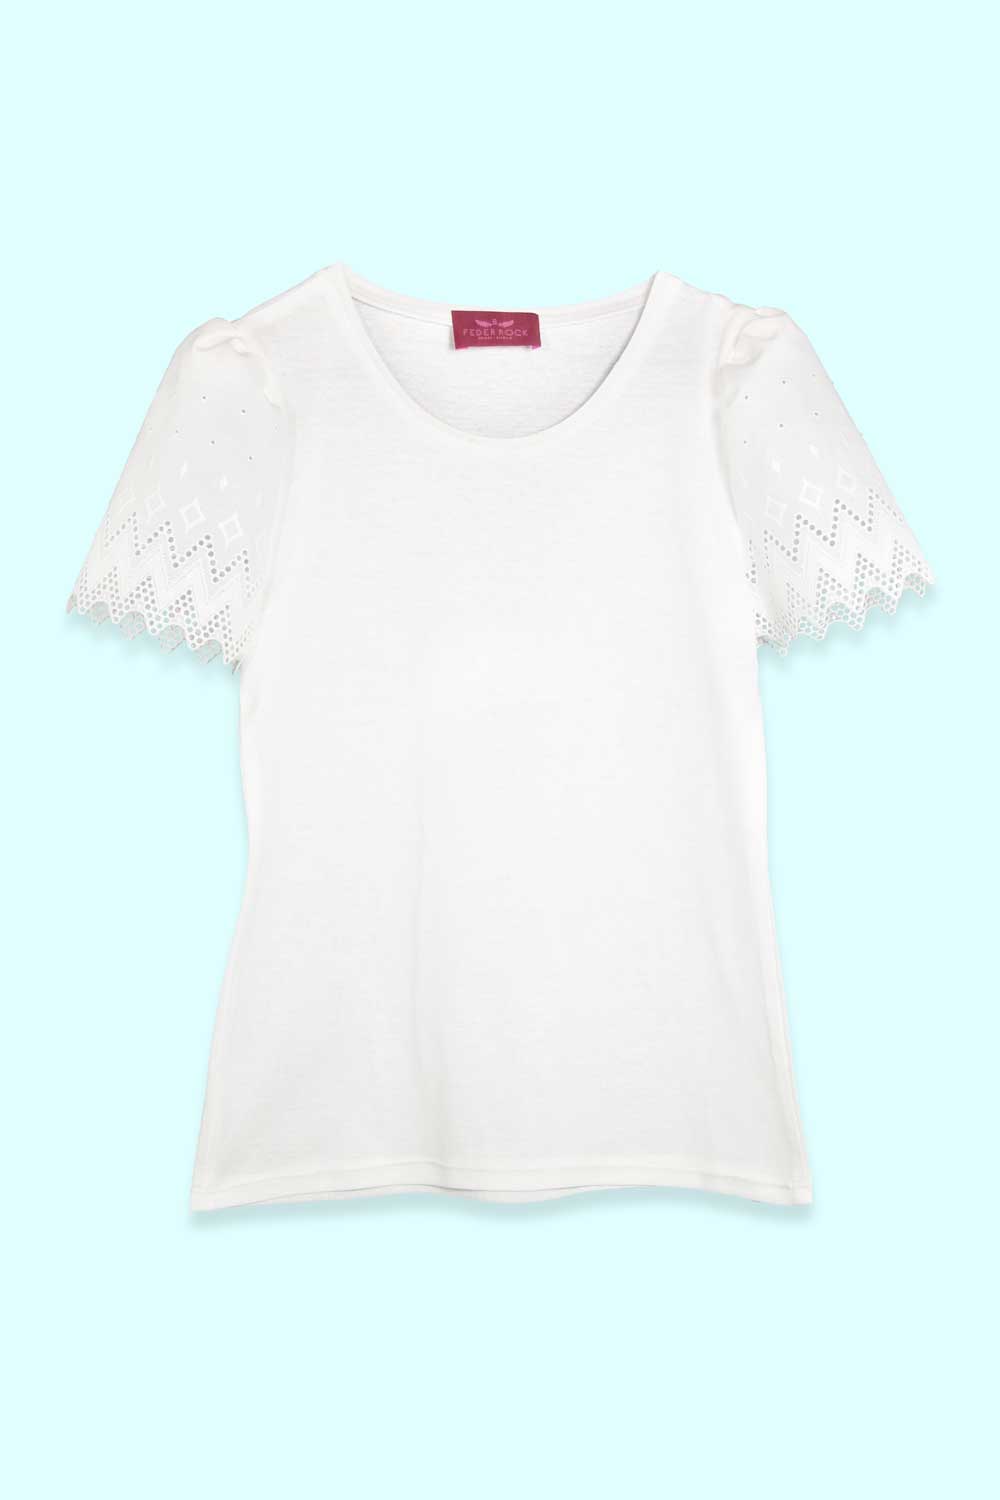 Produktbild Weißes T-Shirt mit einer Schulterpartie aus Spitze. von FederRock